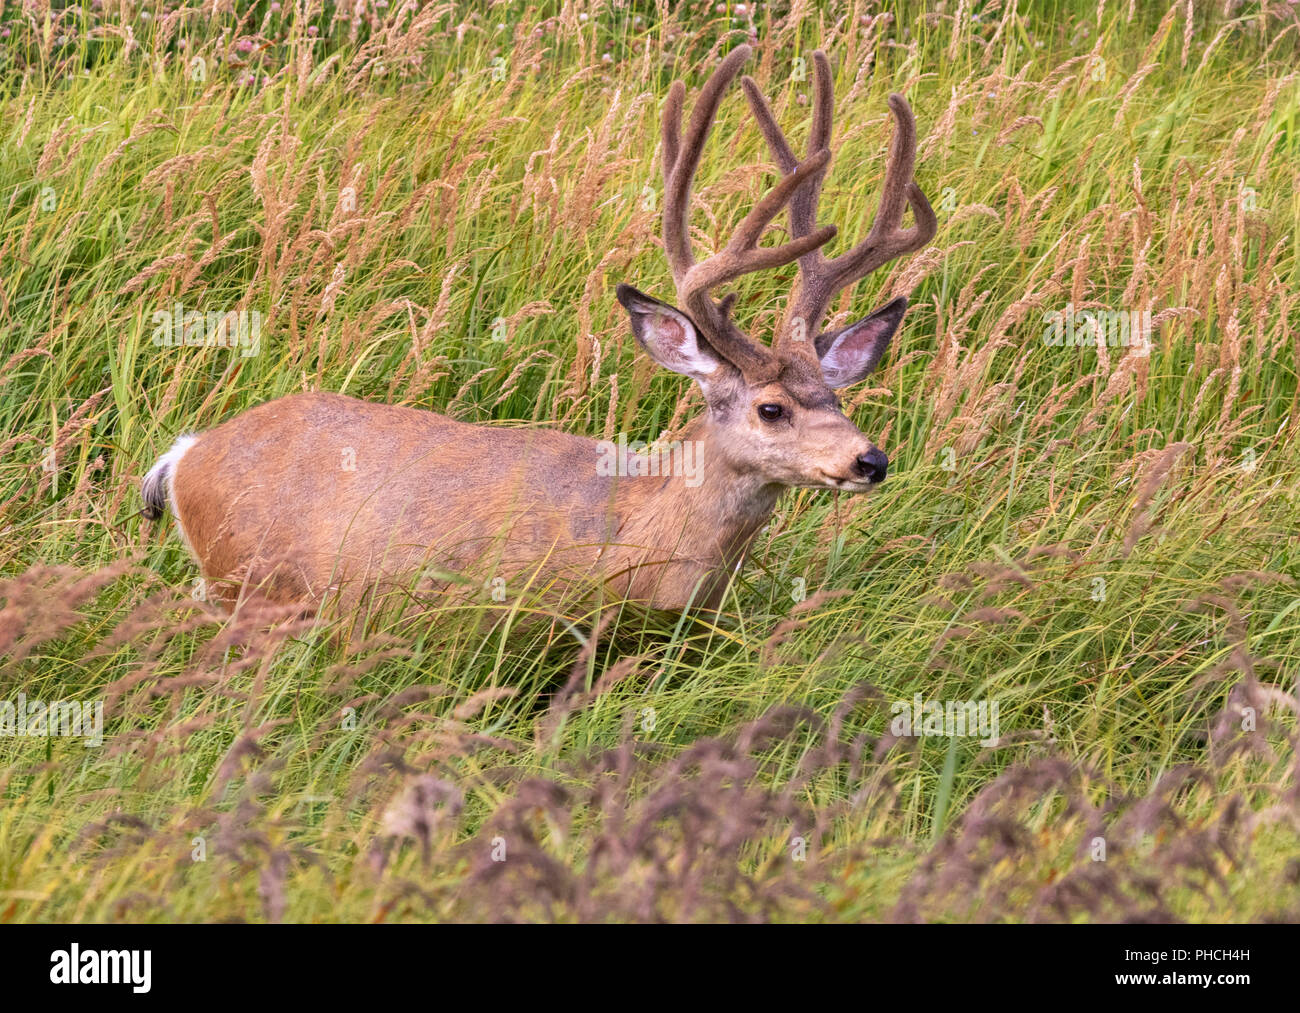 Mule deer (Odocoileus hemionus) male grazing in high grass, Yellowstone National Park, Wyoming, USA Stock Photo